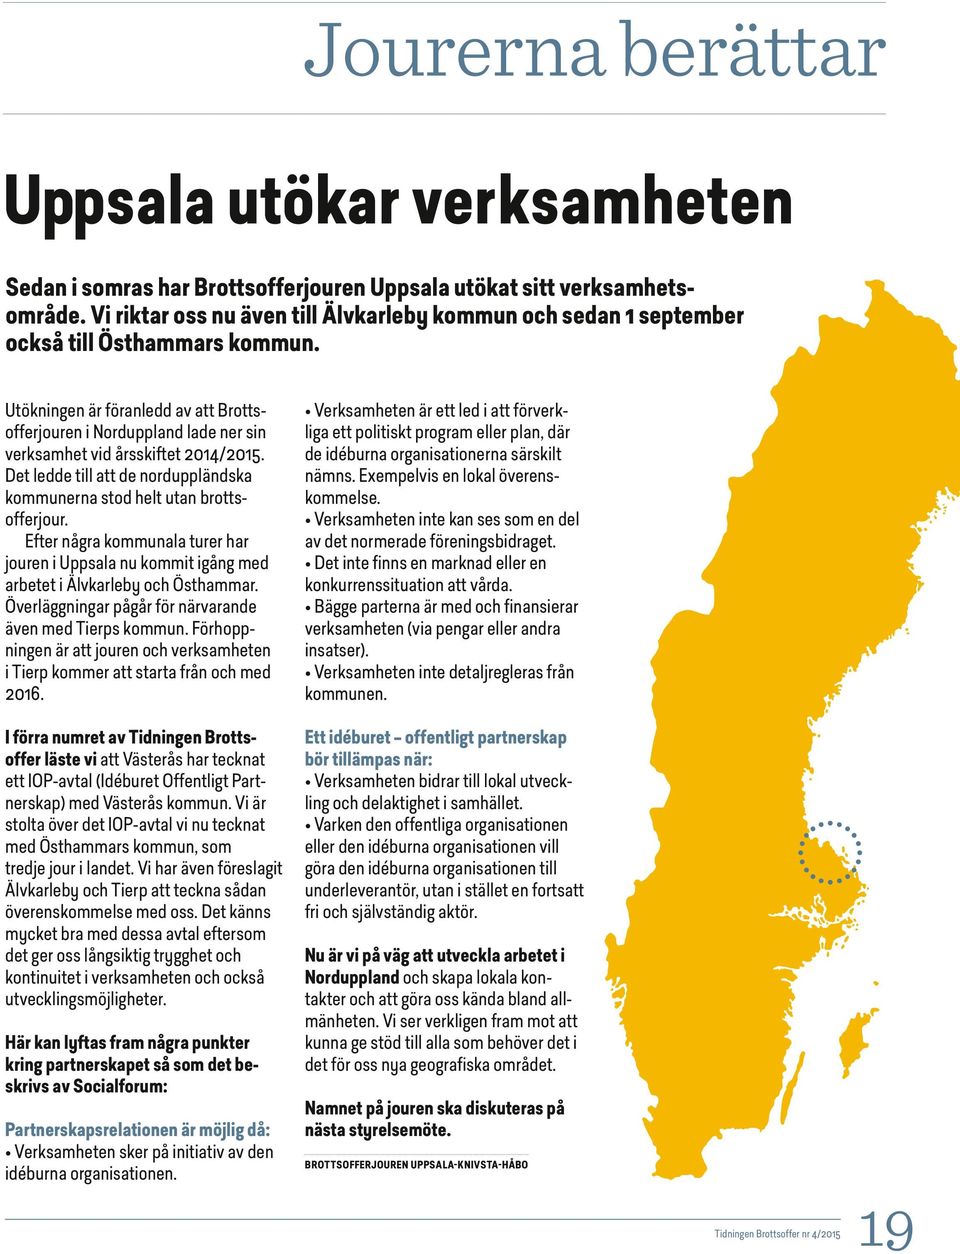 Utökningen är föranledd av att Brottsofferjouren i Norduppland lade ner sin verksamhet vid årsskiftet 2014/2015. Det ledde till att de norduppländska kommunerna stod helt utan brottsofferjour.